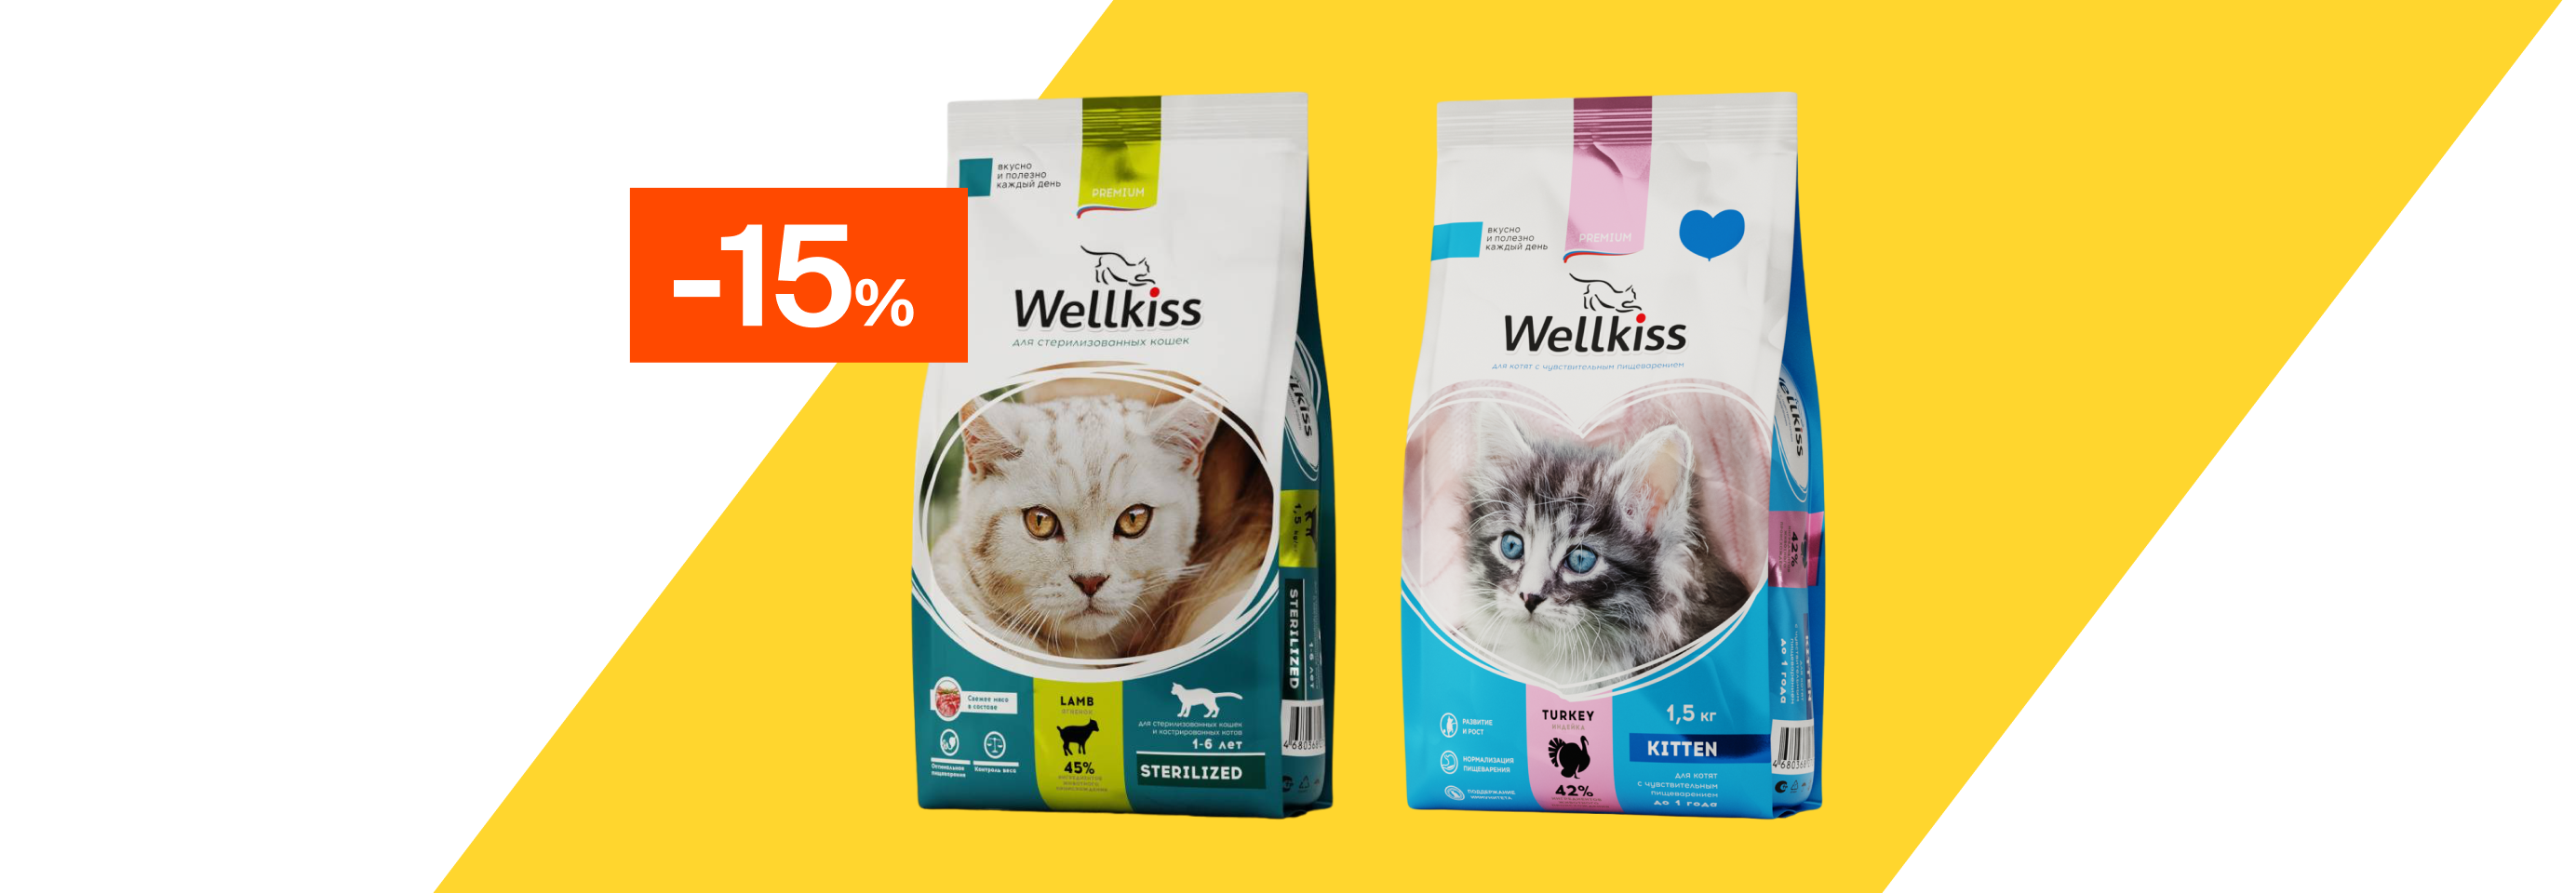 Wellkiss: -15% на сухой корм для кошек